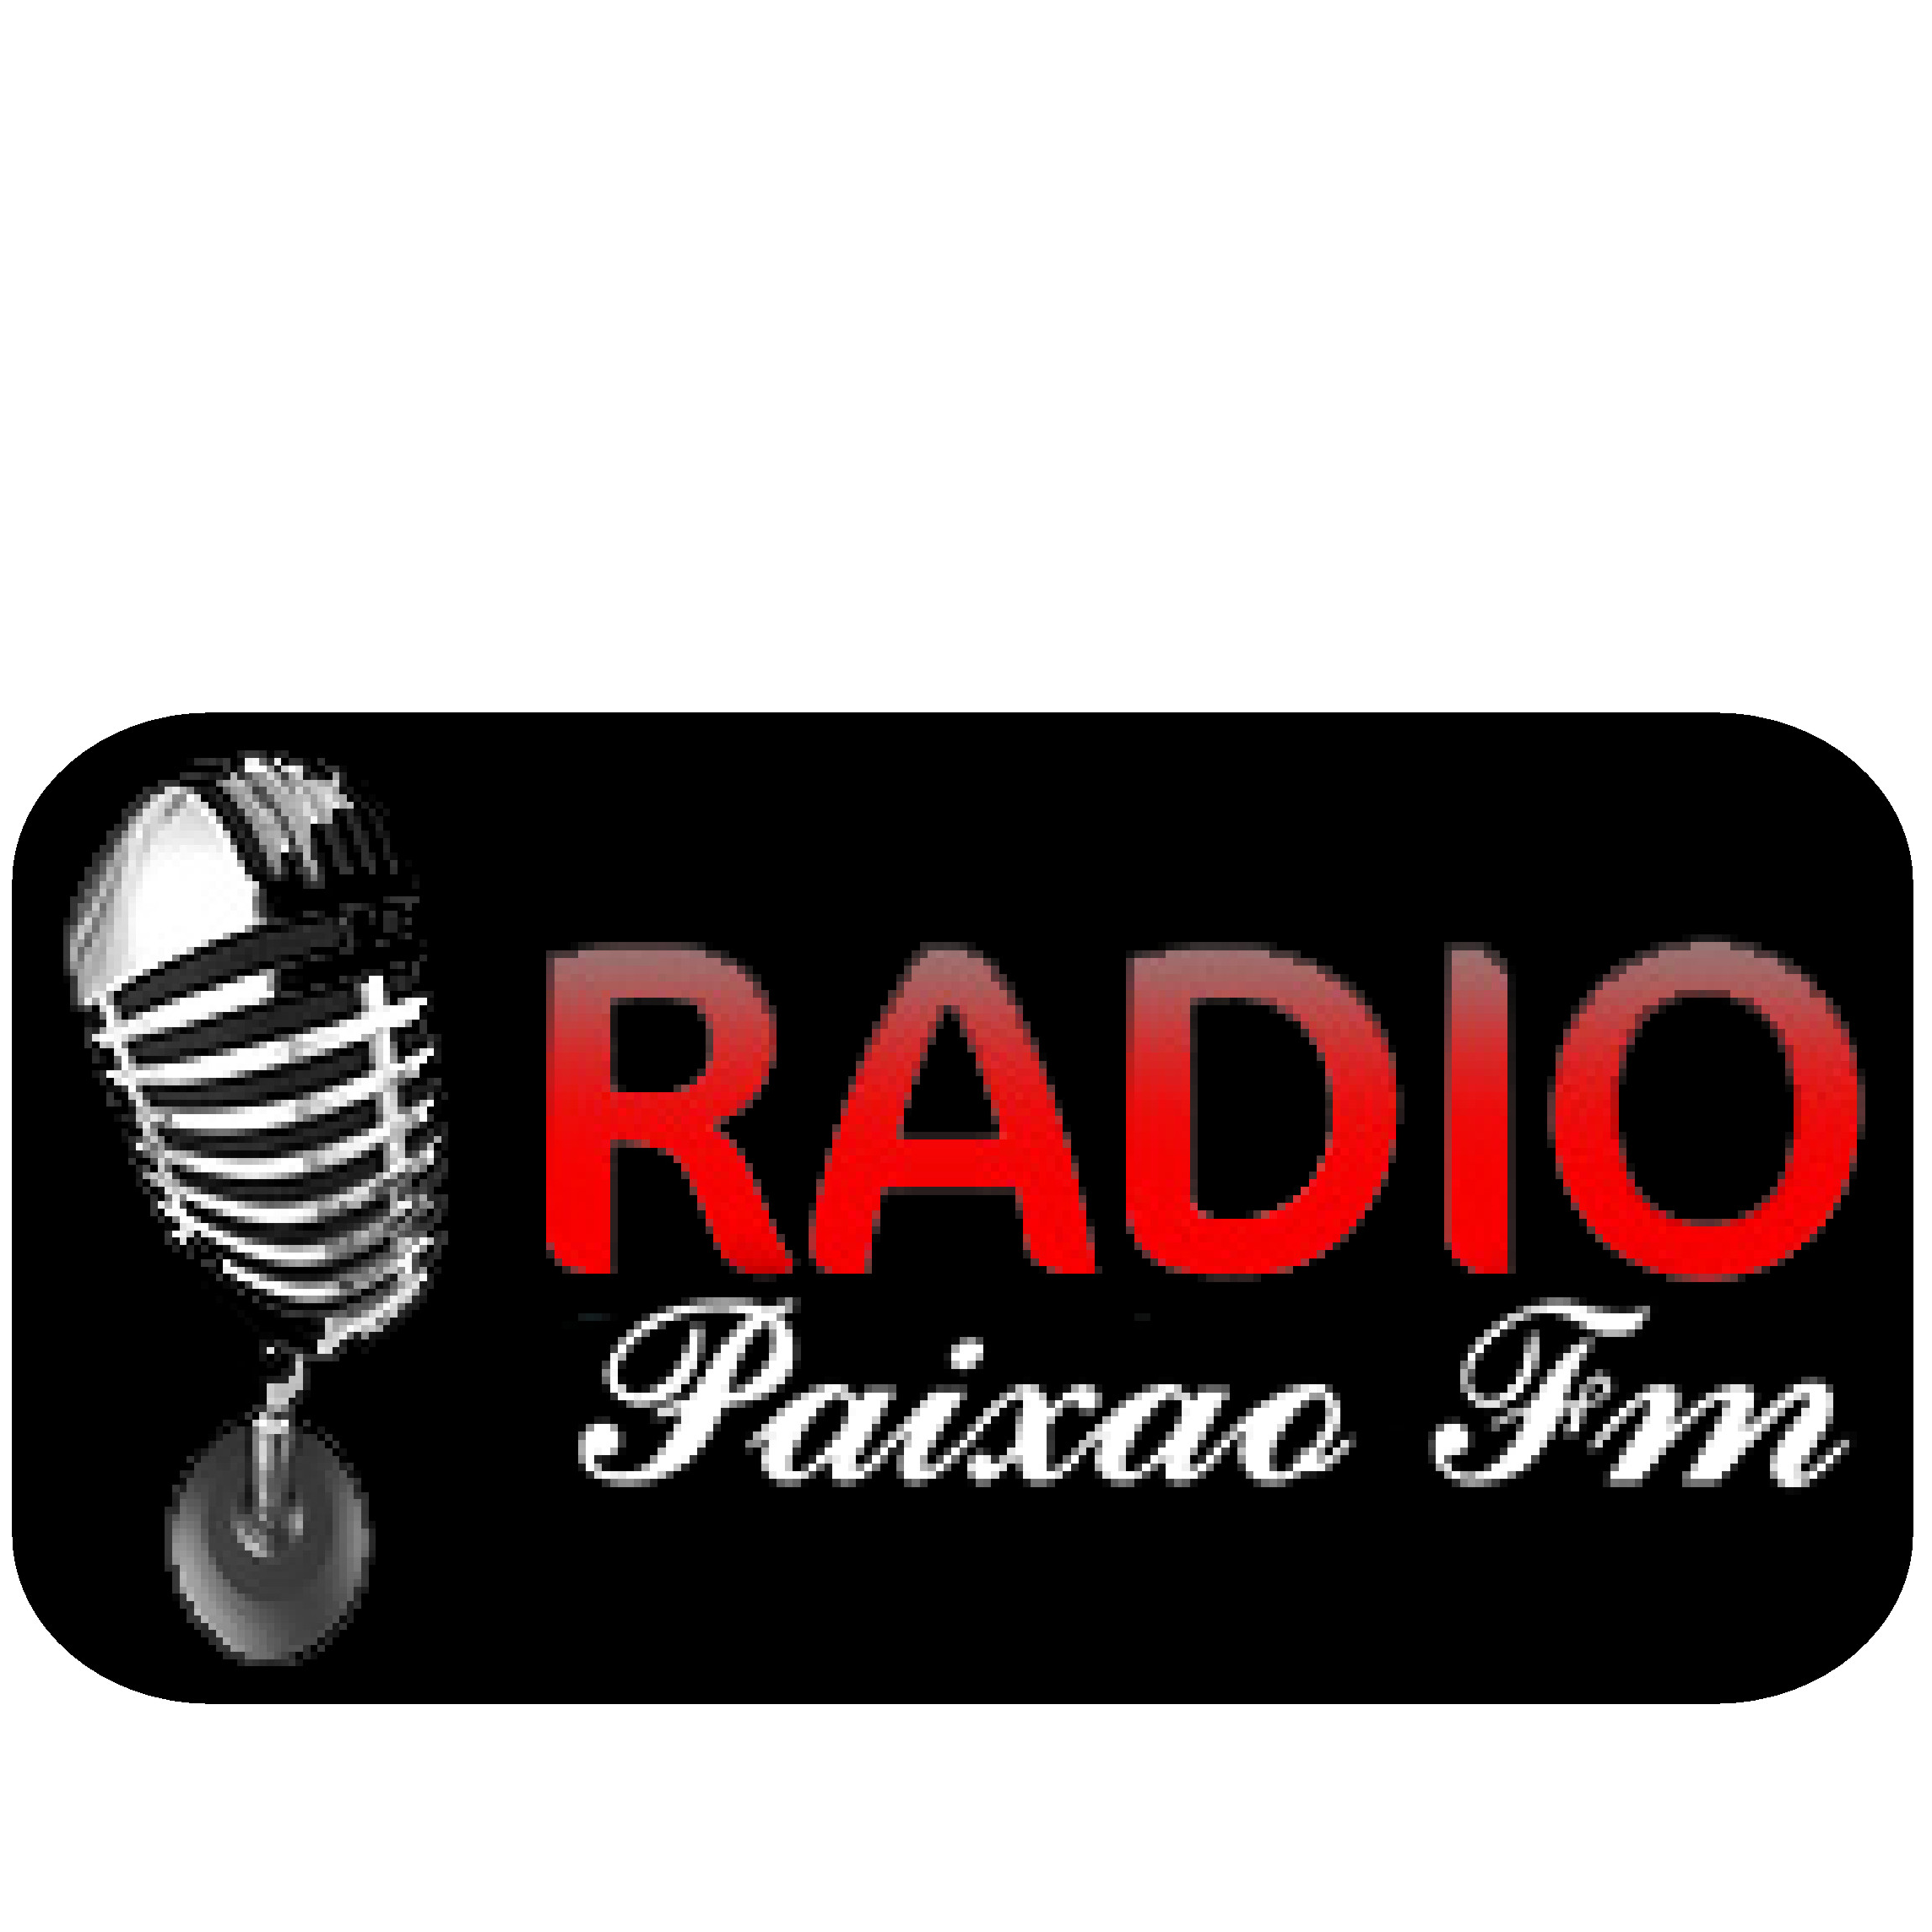 Radio Paixao FM